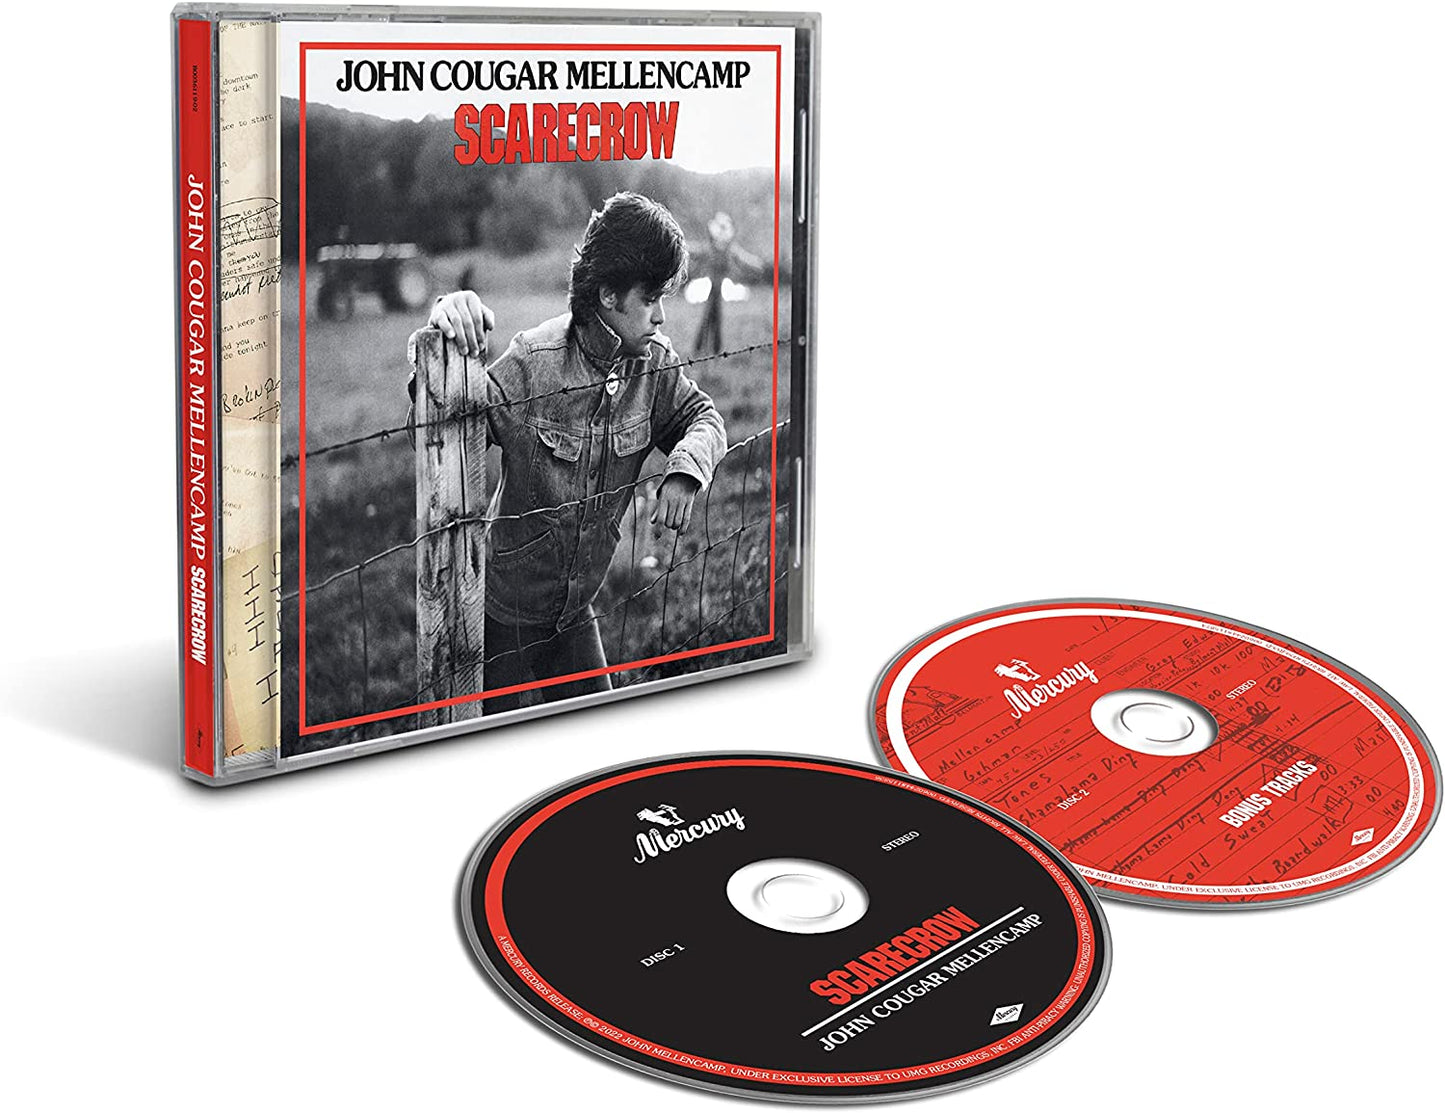 John Mellencamp - Scarecrow - 2CD